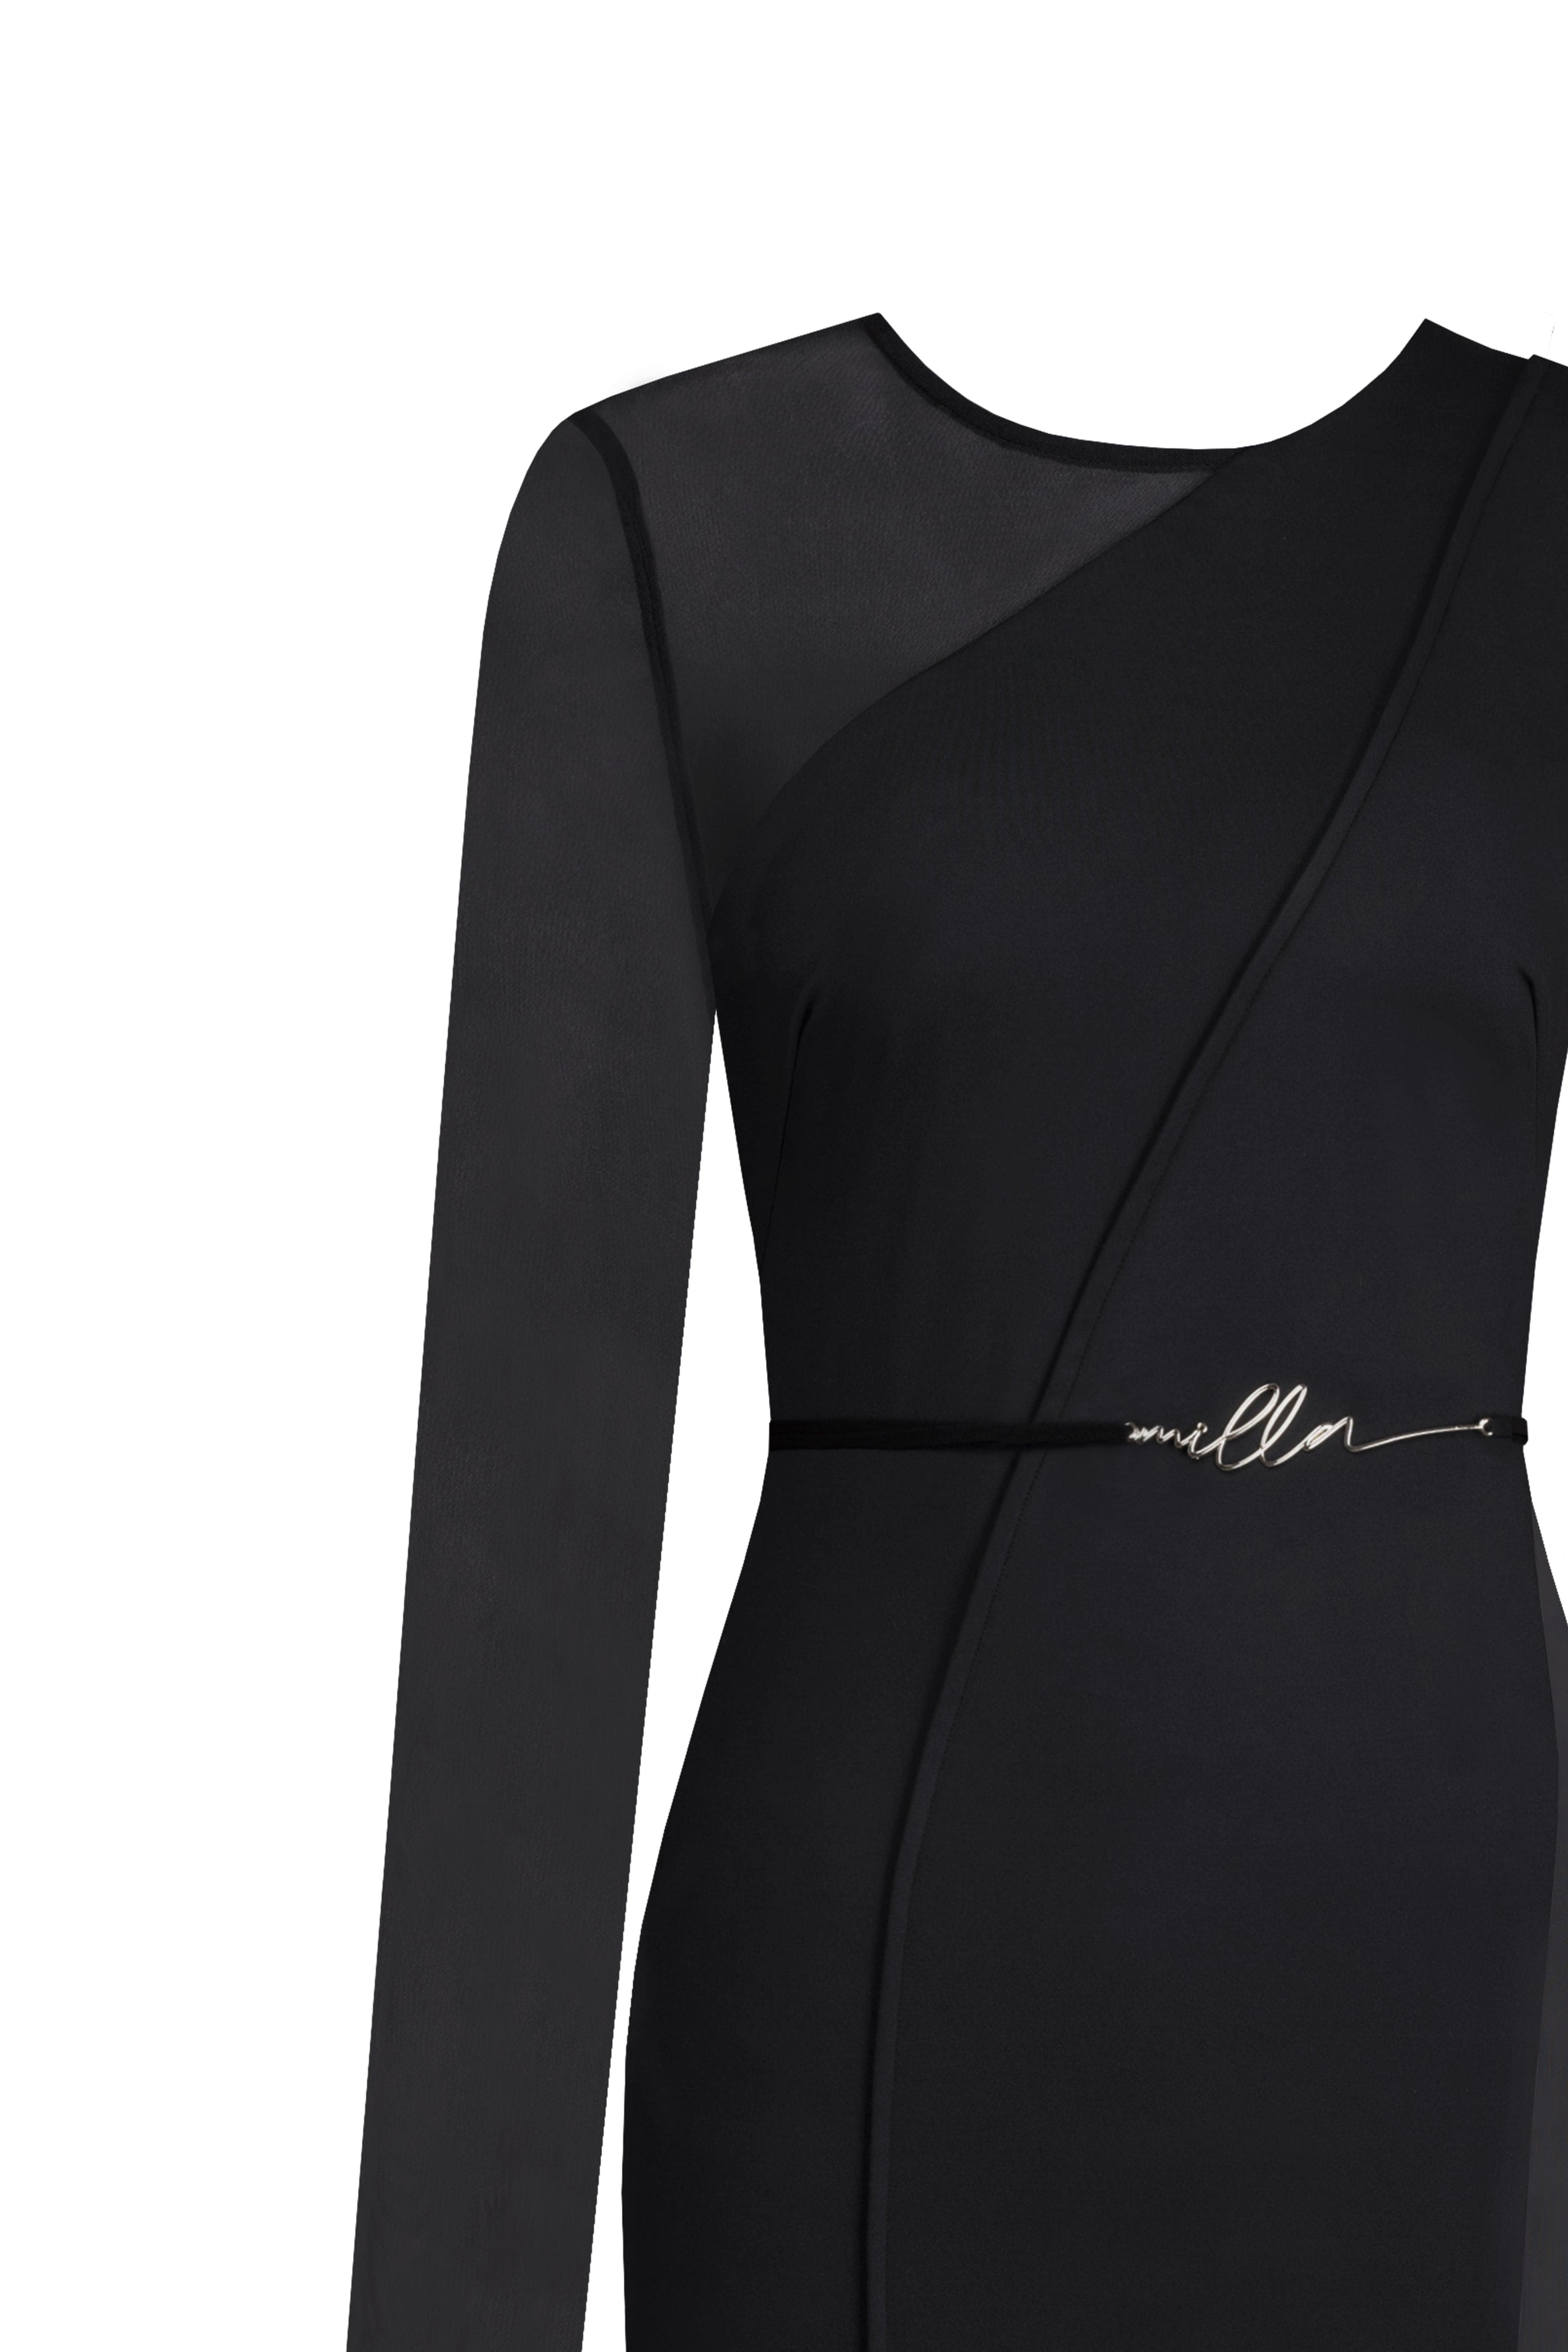 فستان قصير مذهل بكتف واحد مع إضافات شفافة باللون الأسود